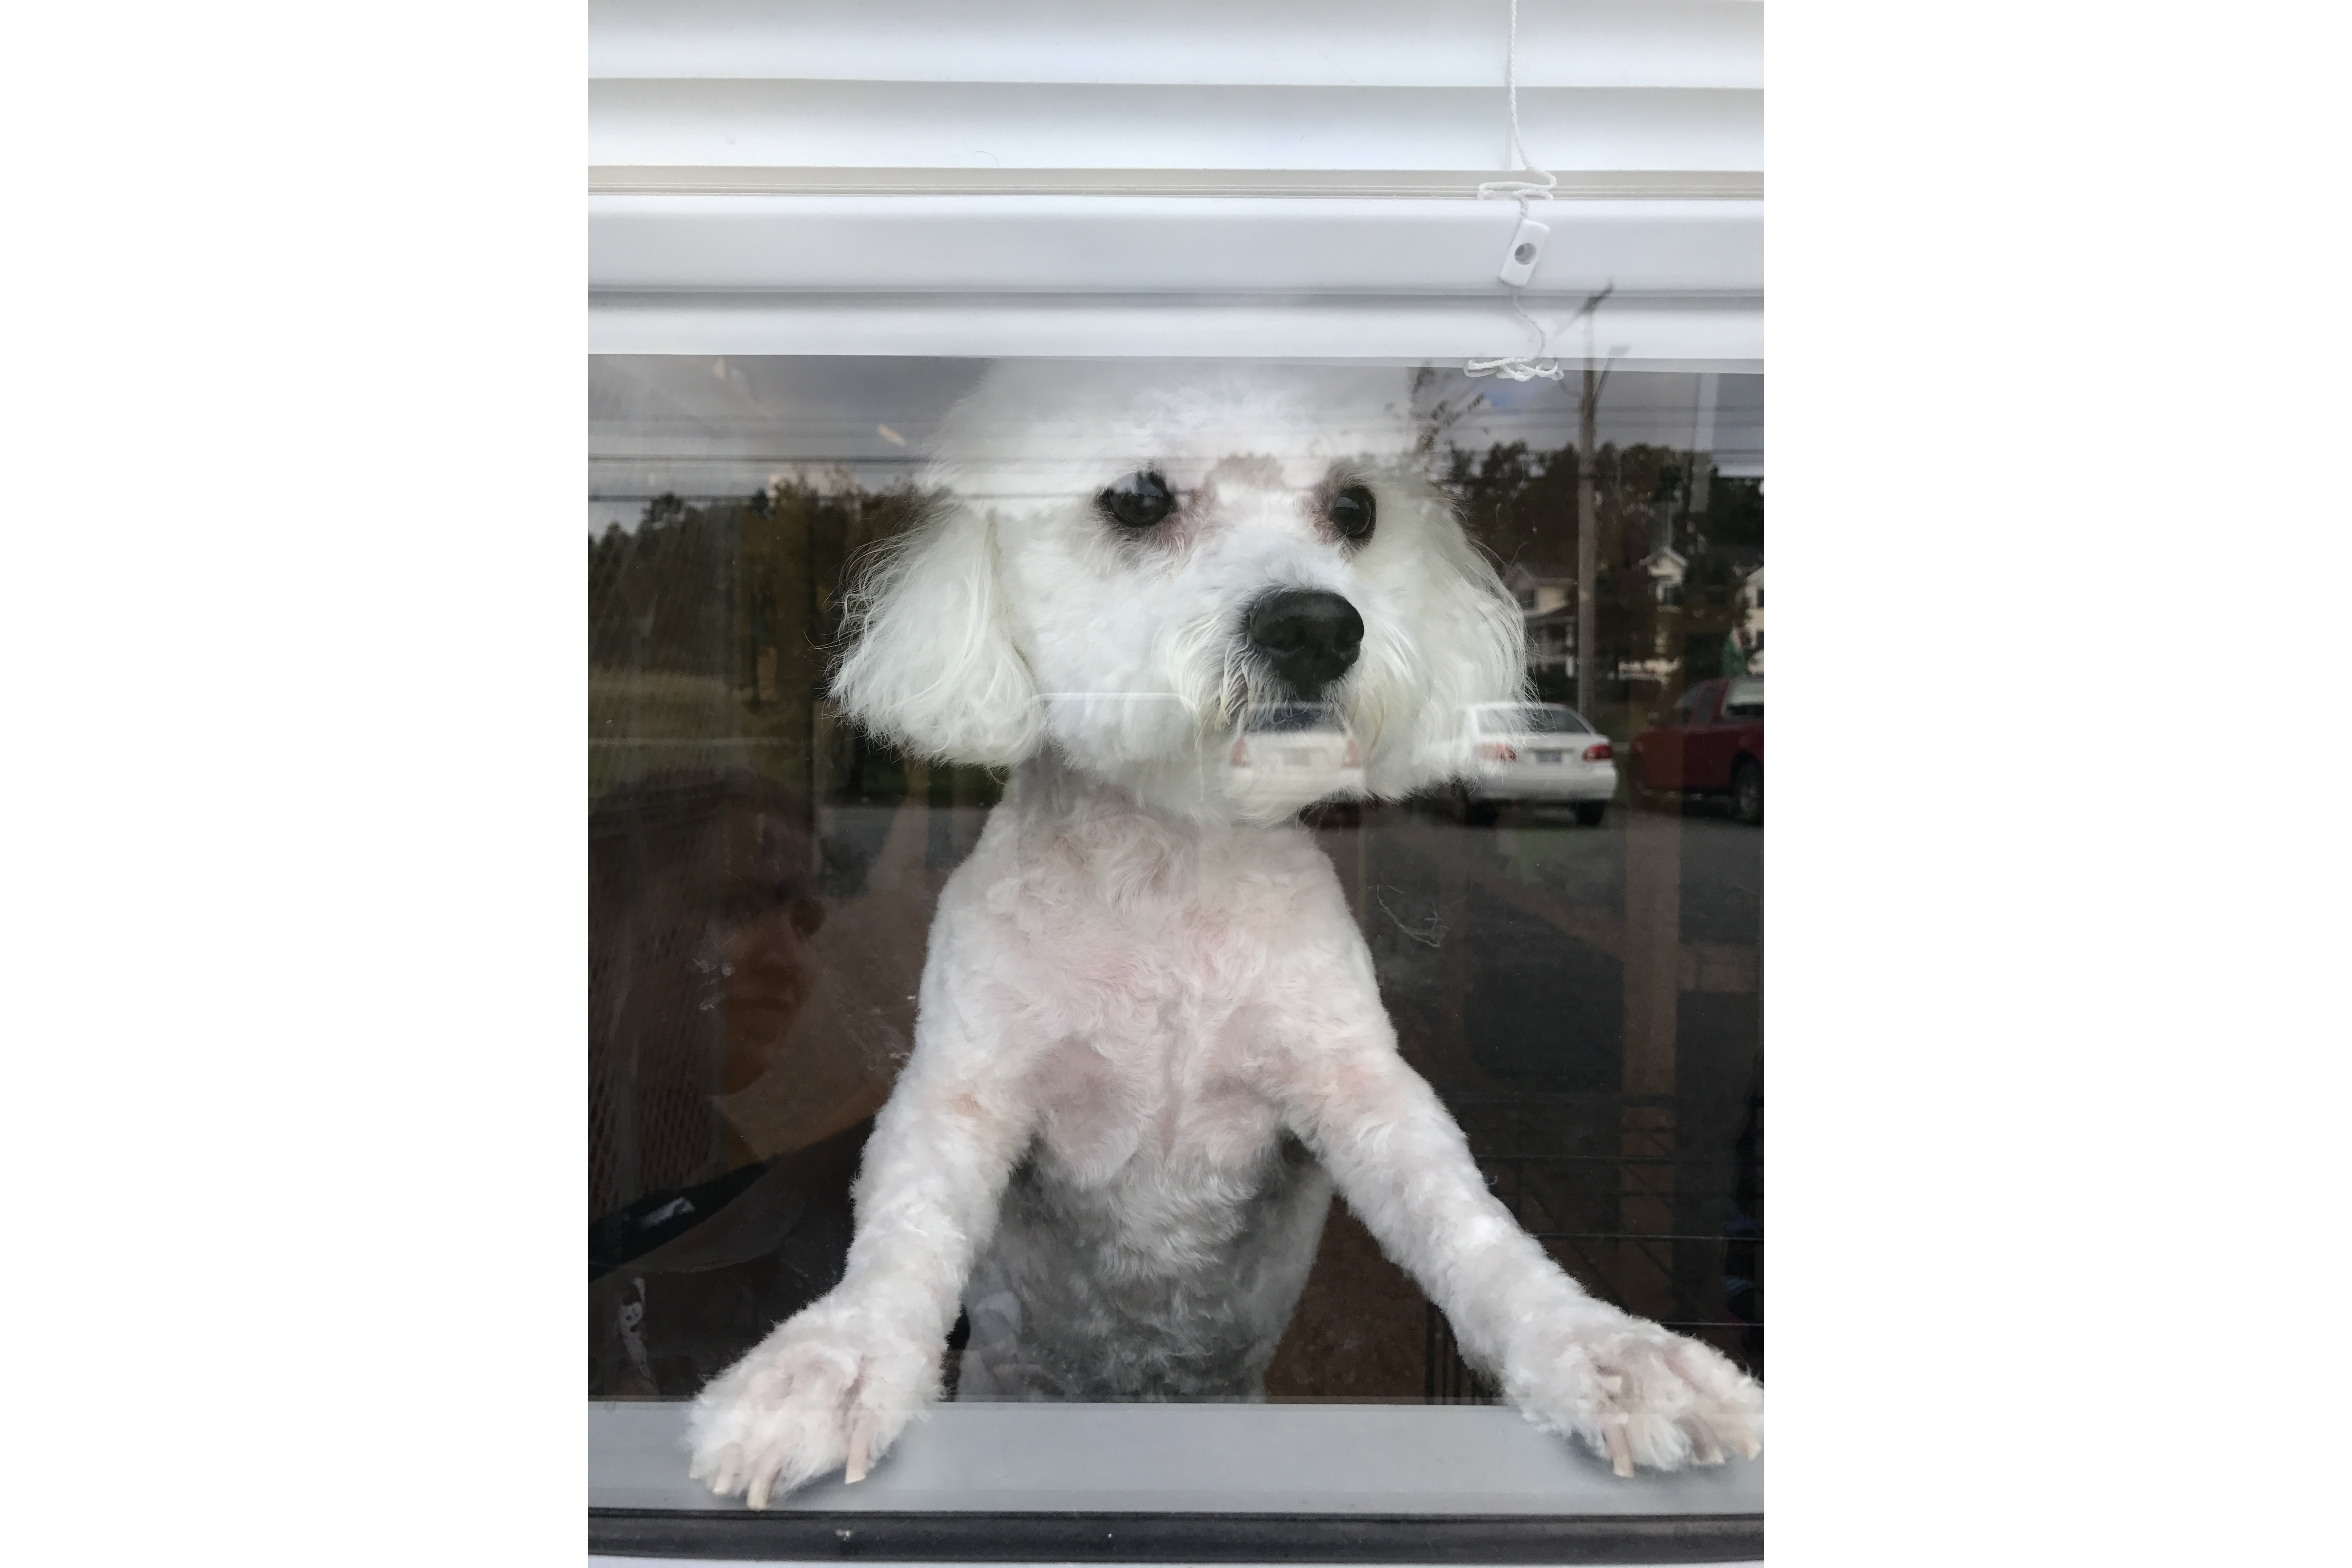 https://0201.nccdn.net/1_2/000/000/0a8/dea/puppy-in-the-window-6048x4032.jpg